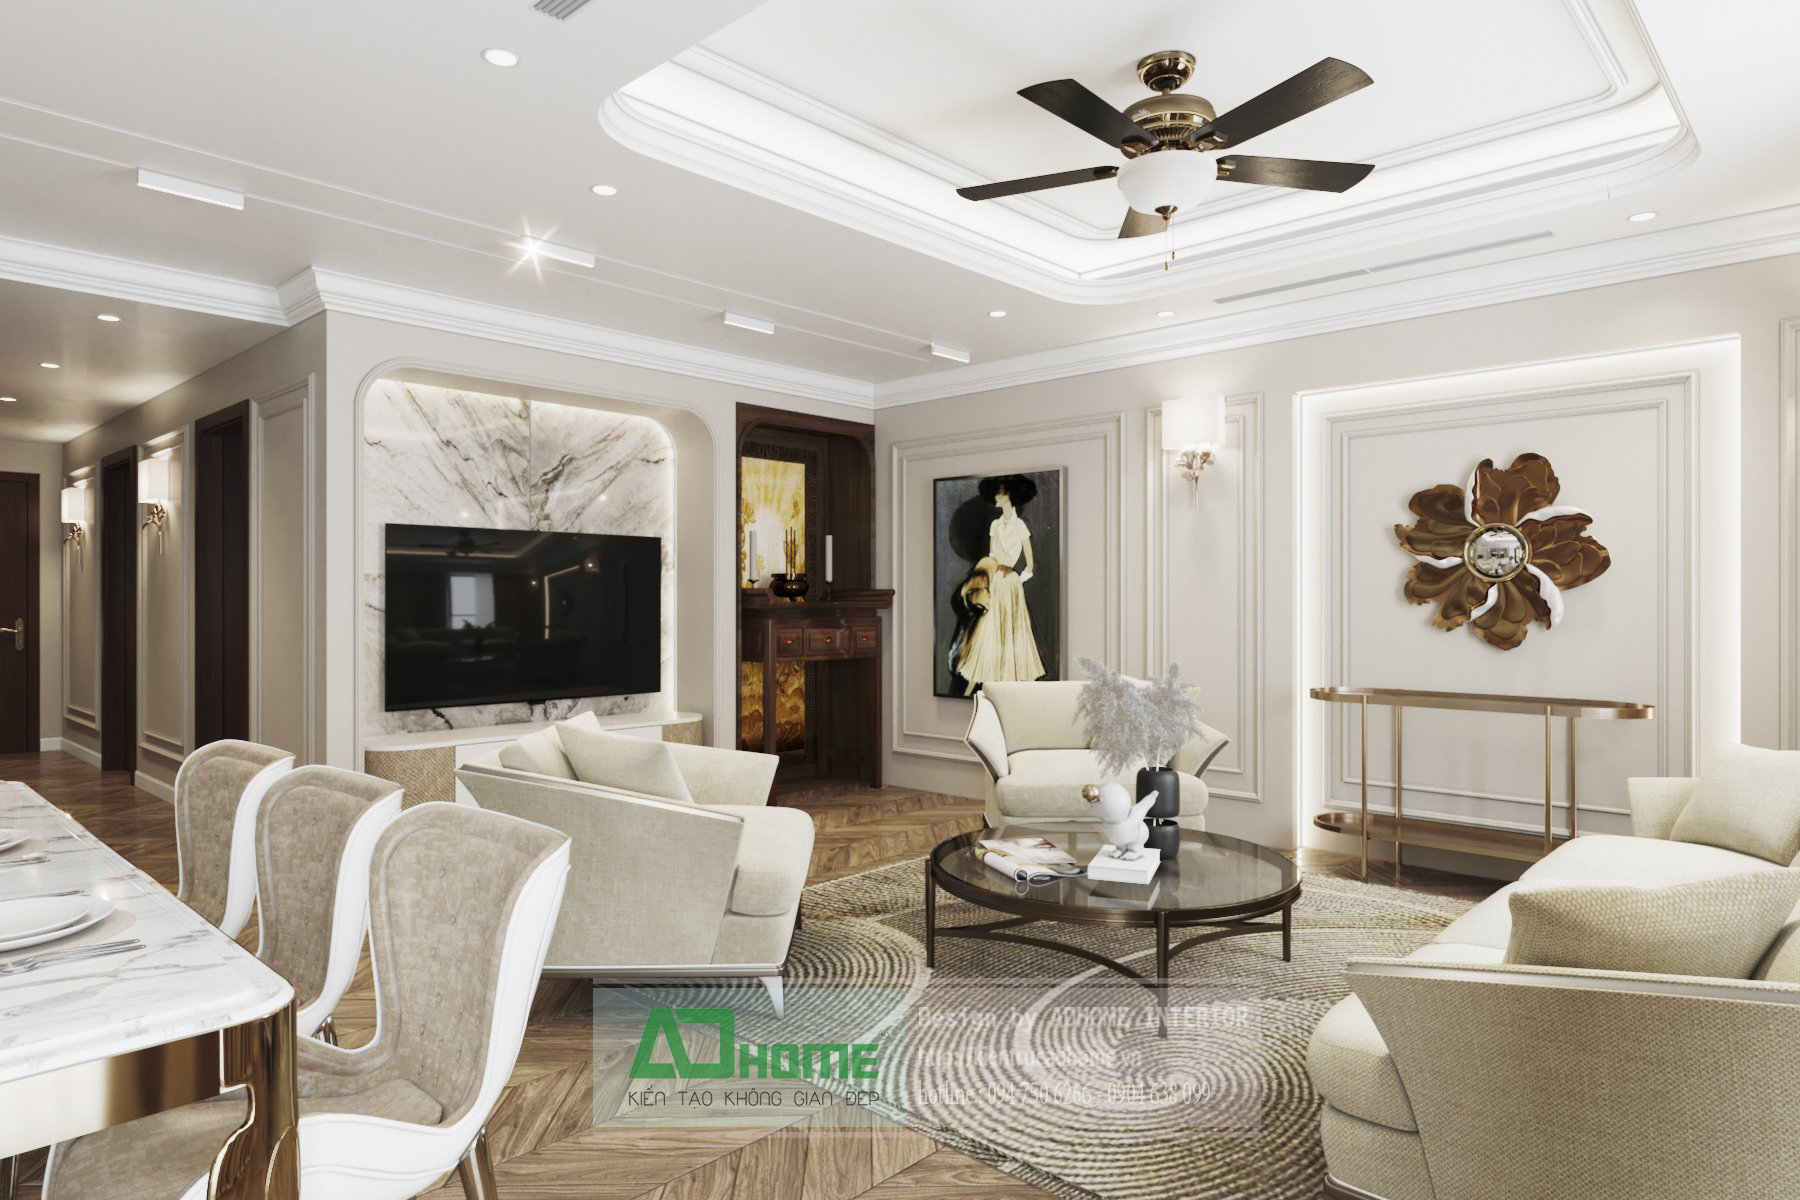 Thiết kế nội thất chung cư Goldmarkcity - 168m2 Sapphire2 - 02 - Phong cách Tân cổ điển